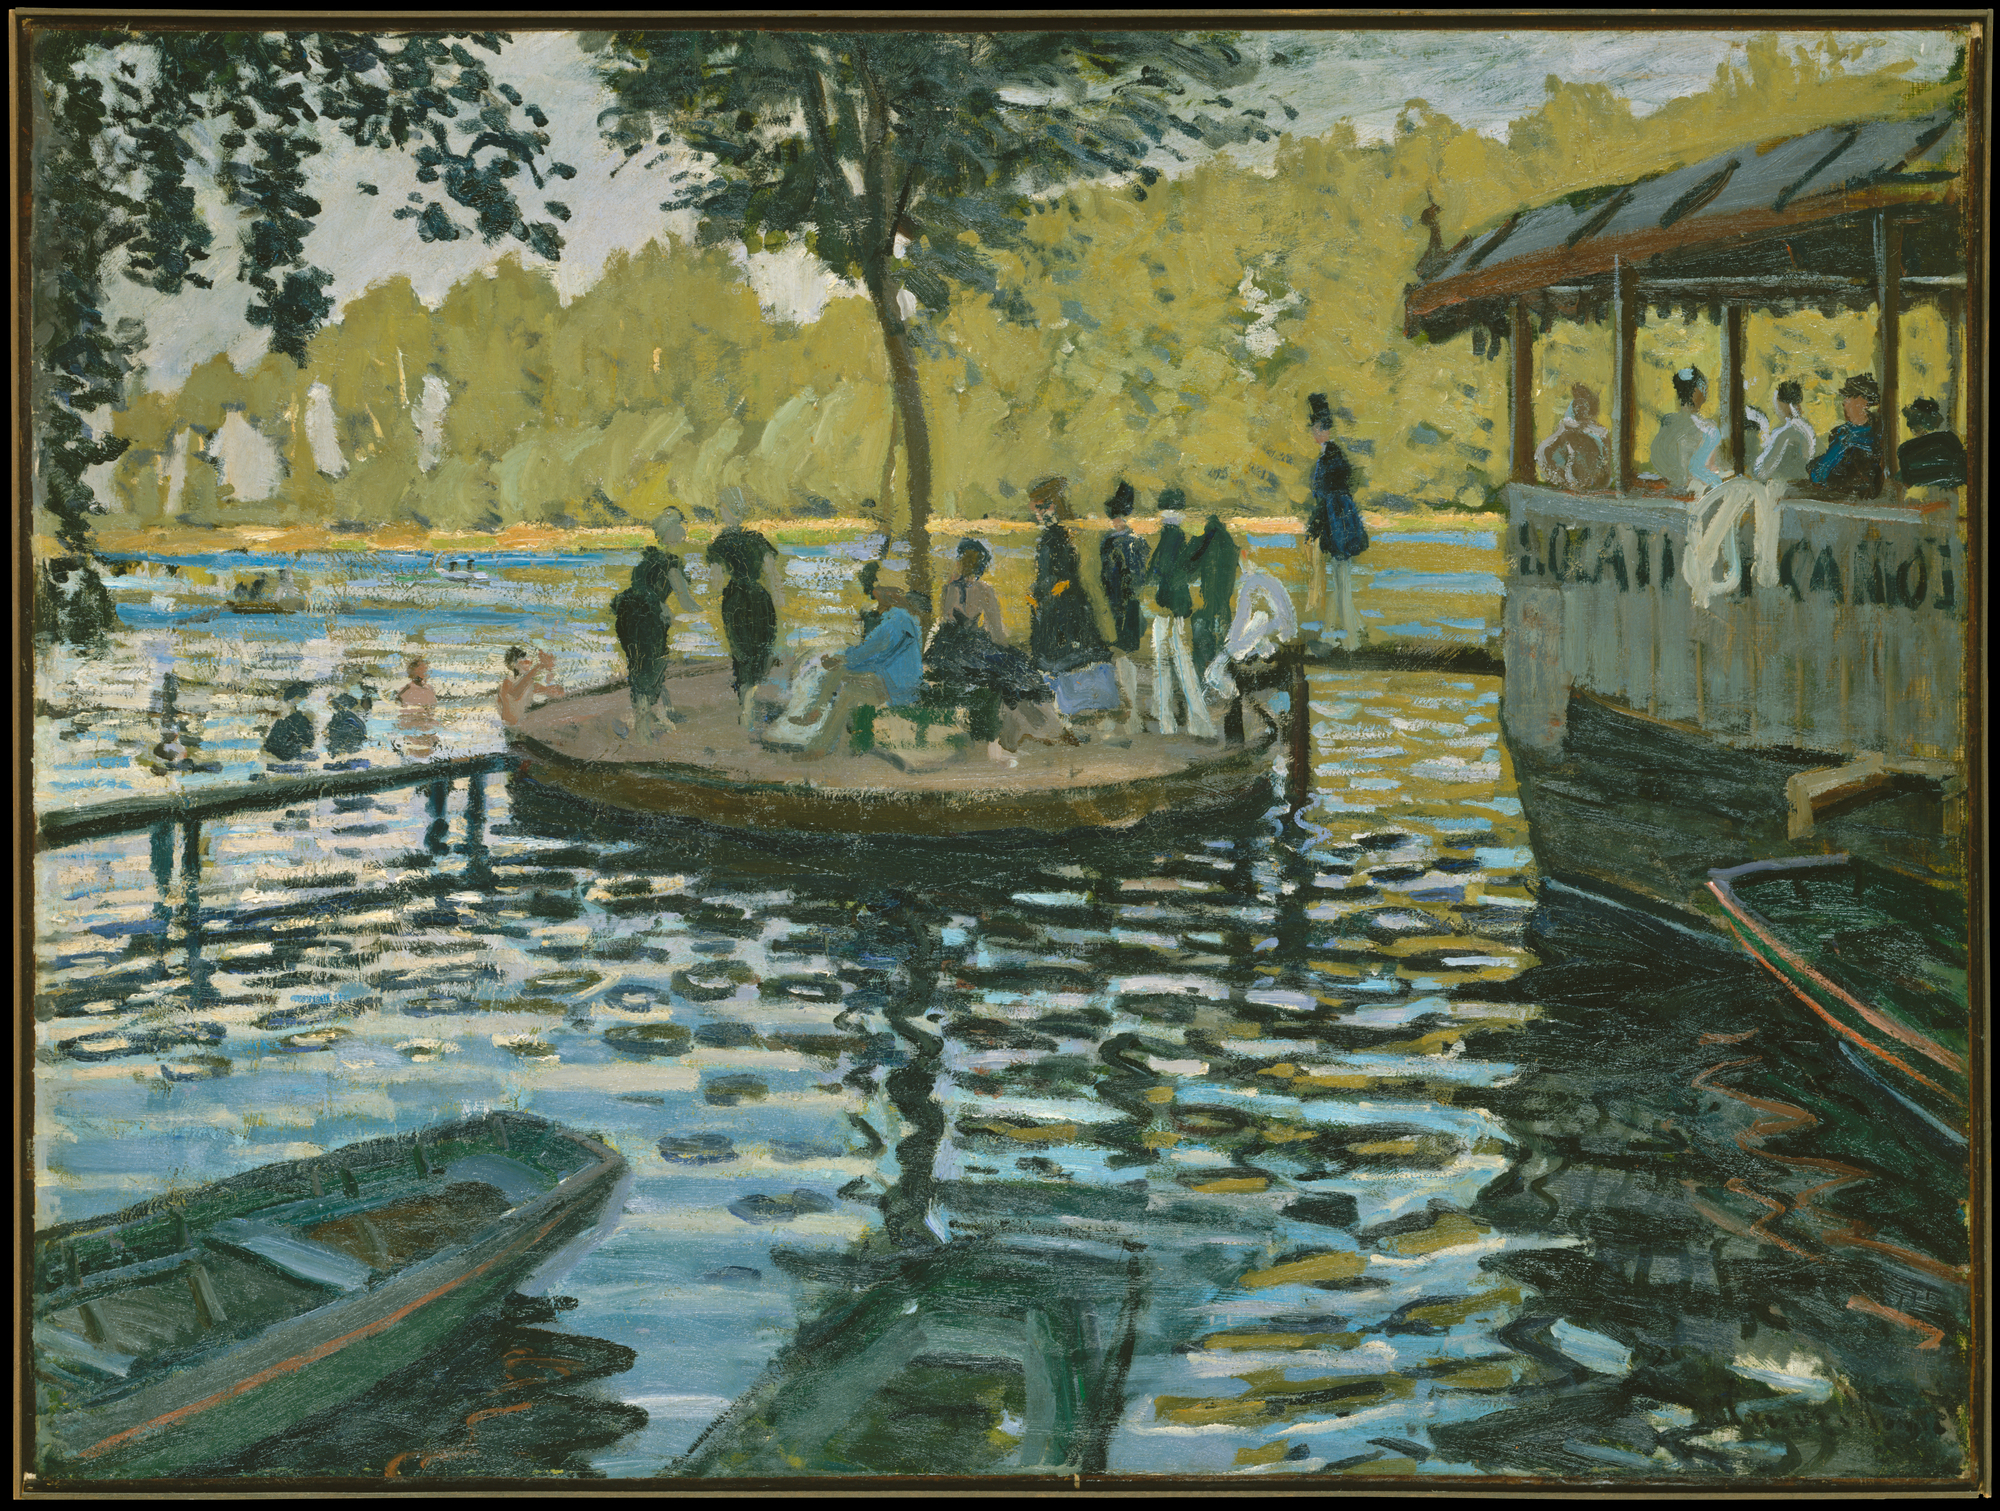 Banhistas da Grenouillière by Claude Monet - 1869 - 74.6 × 99.7 cm 